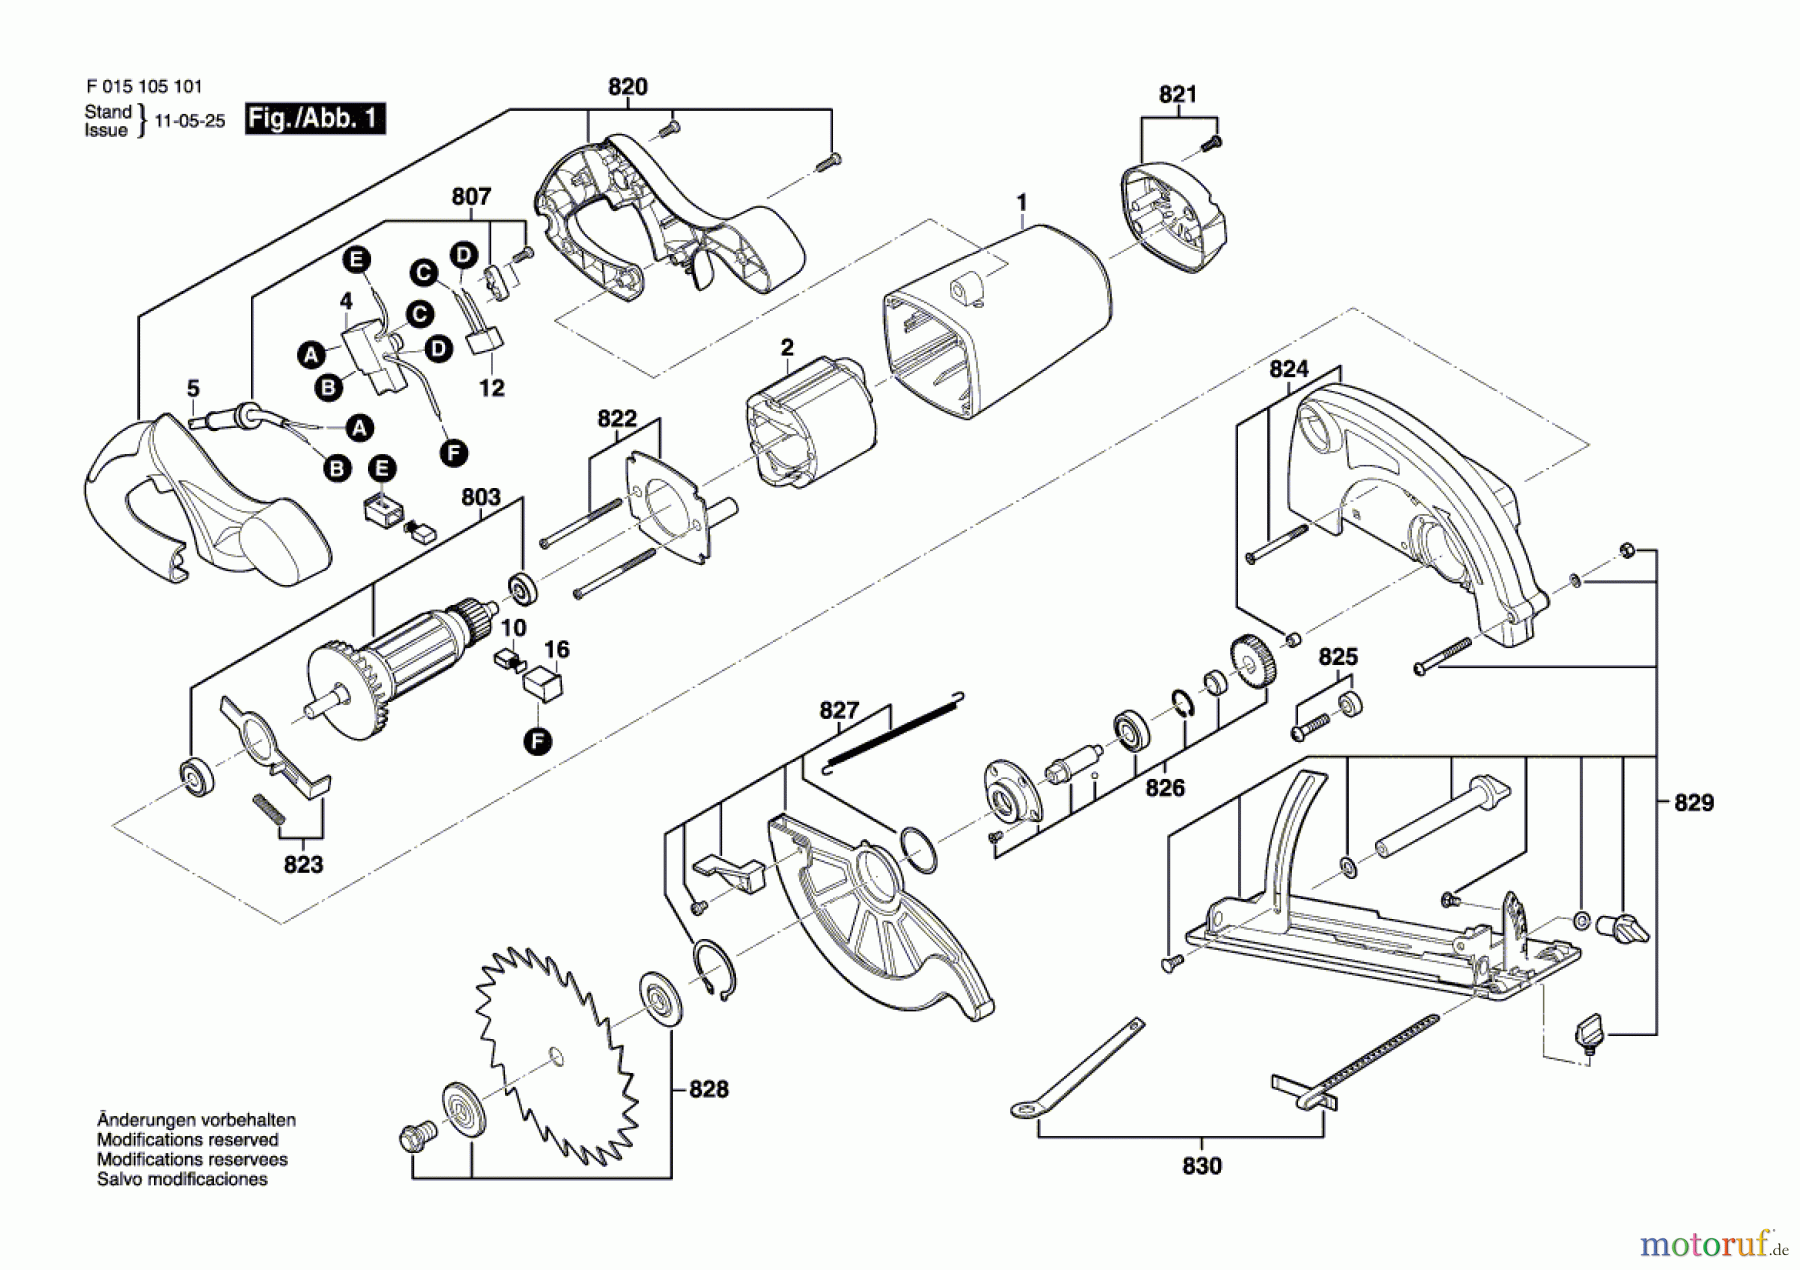  Bosch Werkzeug Handkreissäge 1051 Seite 1